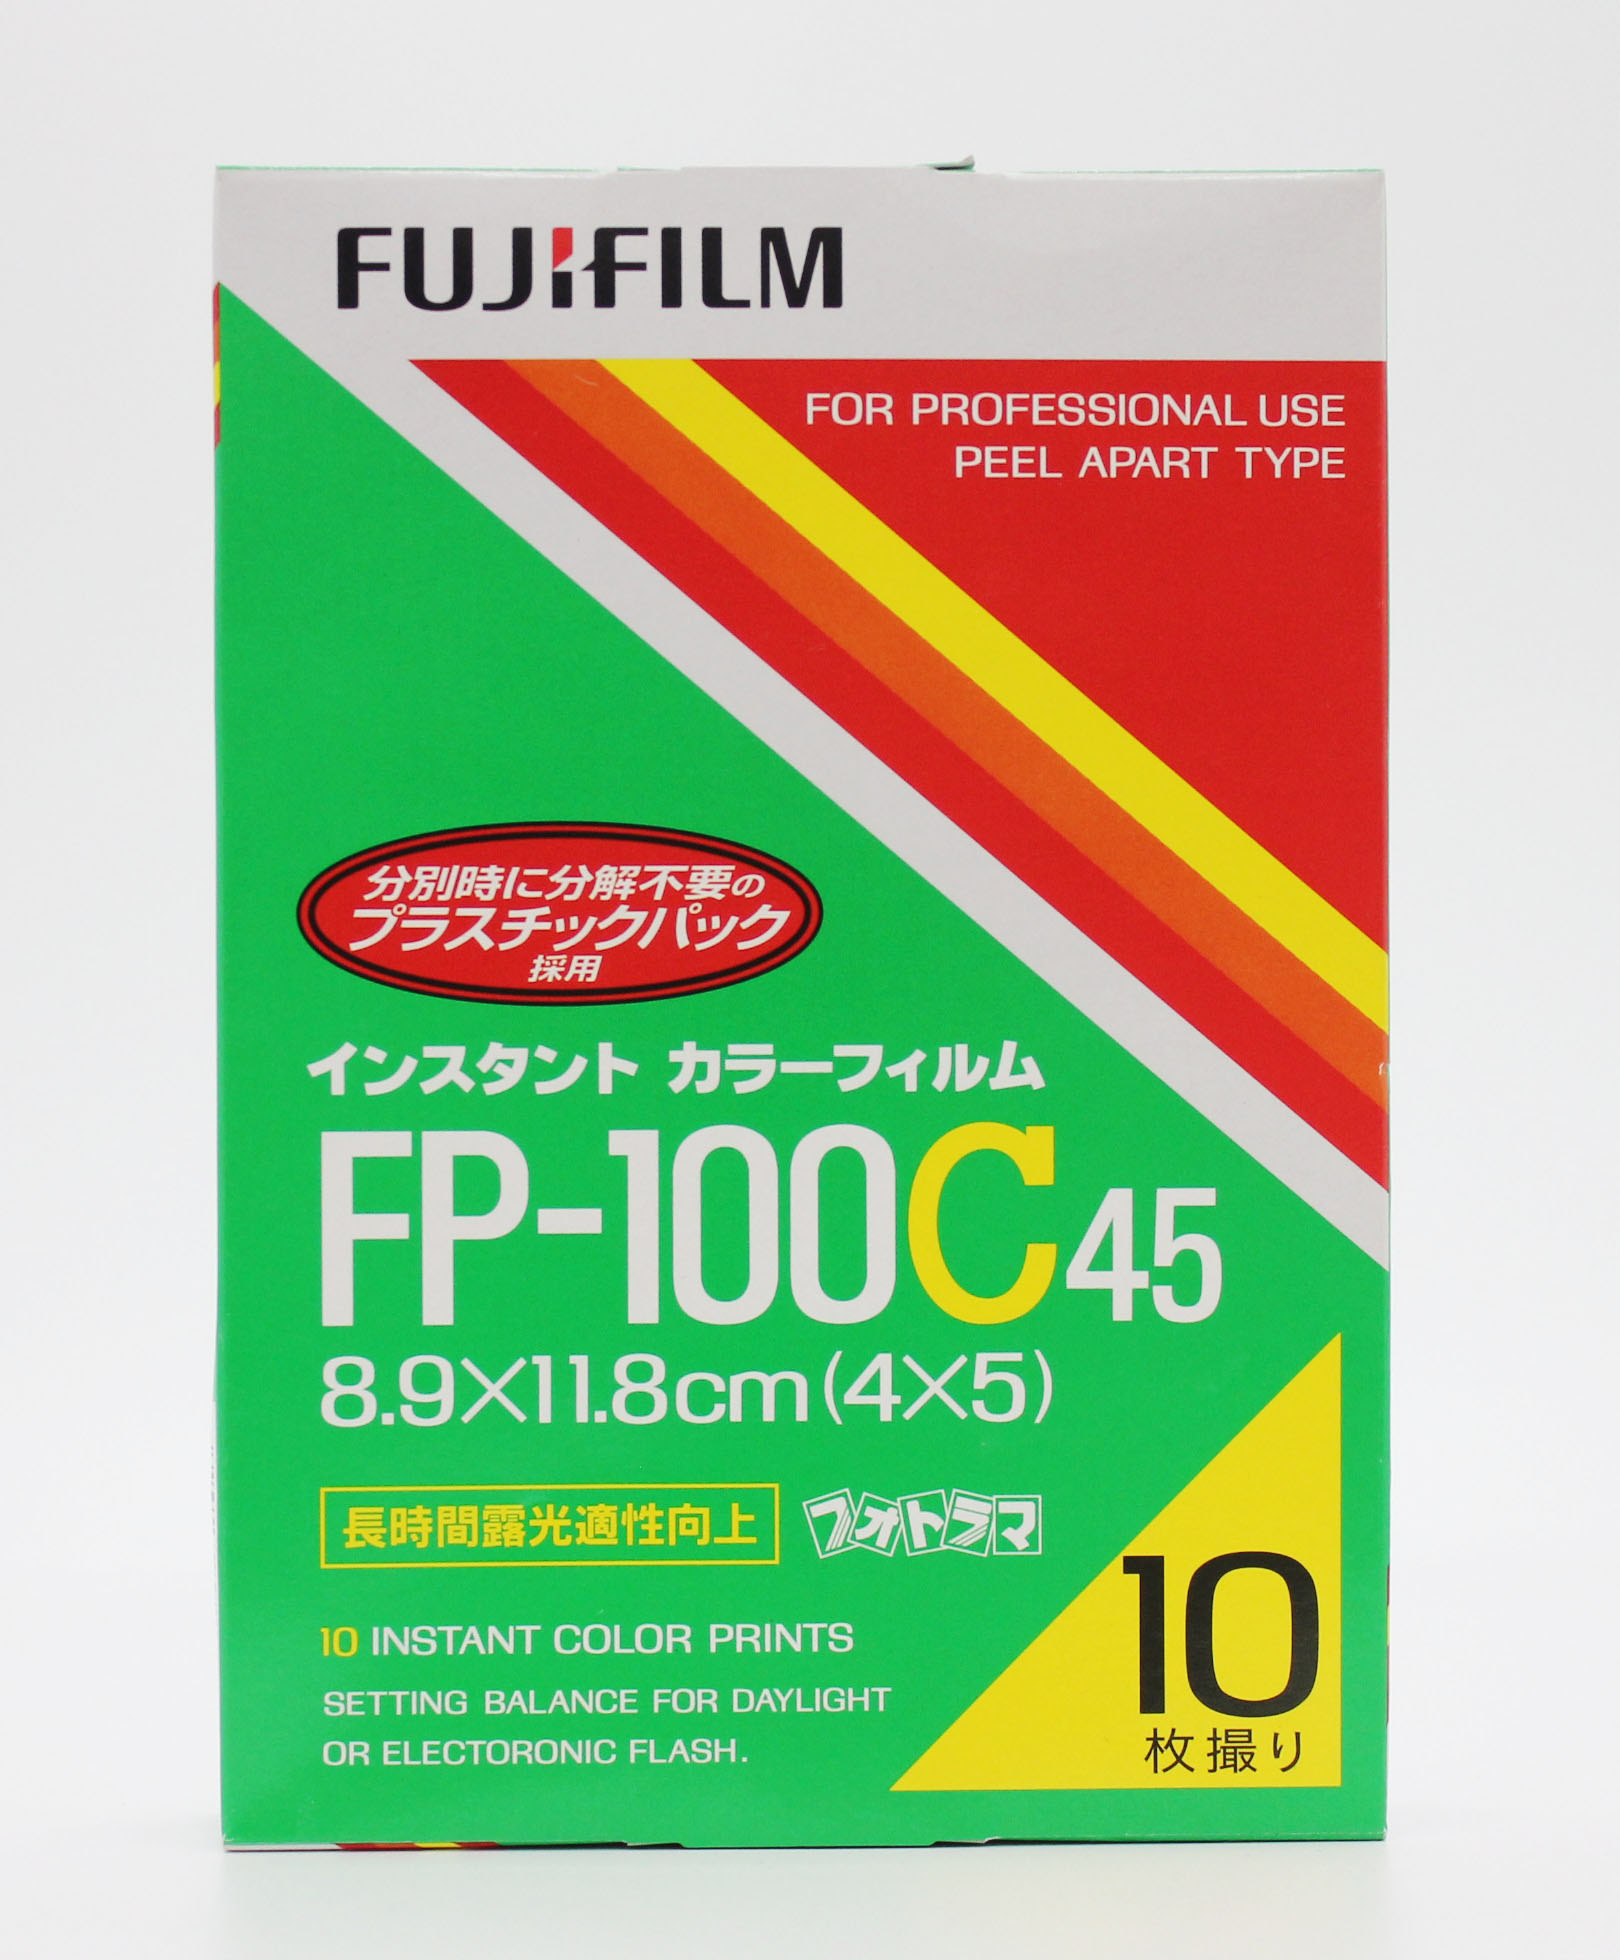  Fuji Fujifilm FP-100C45 4x5 8.9x11.8cm Instant Color Film (EXP 10/2009) Photo 1